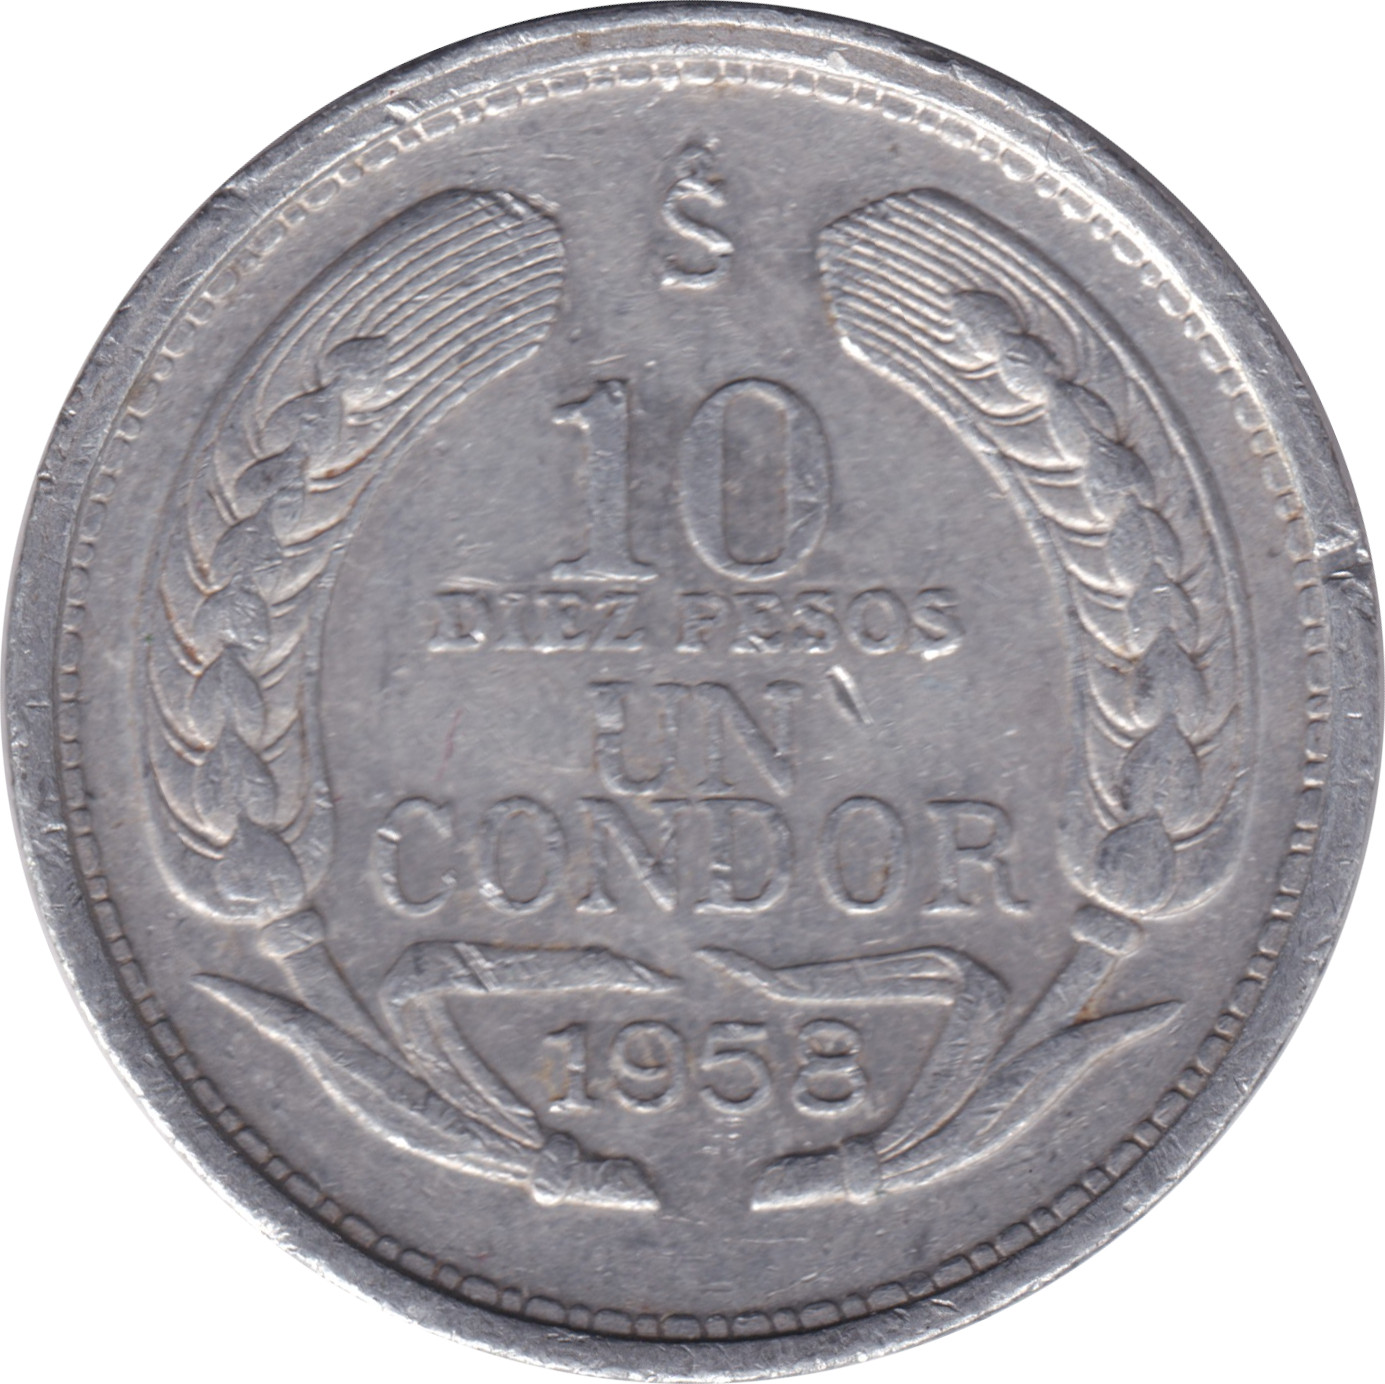 10 pesos - Condor